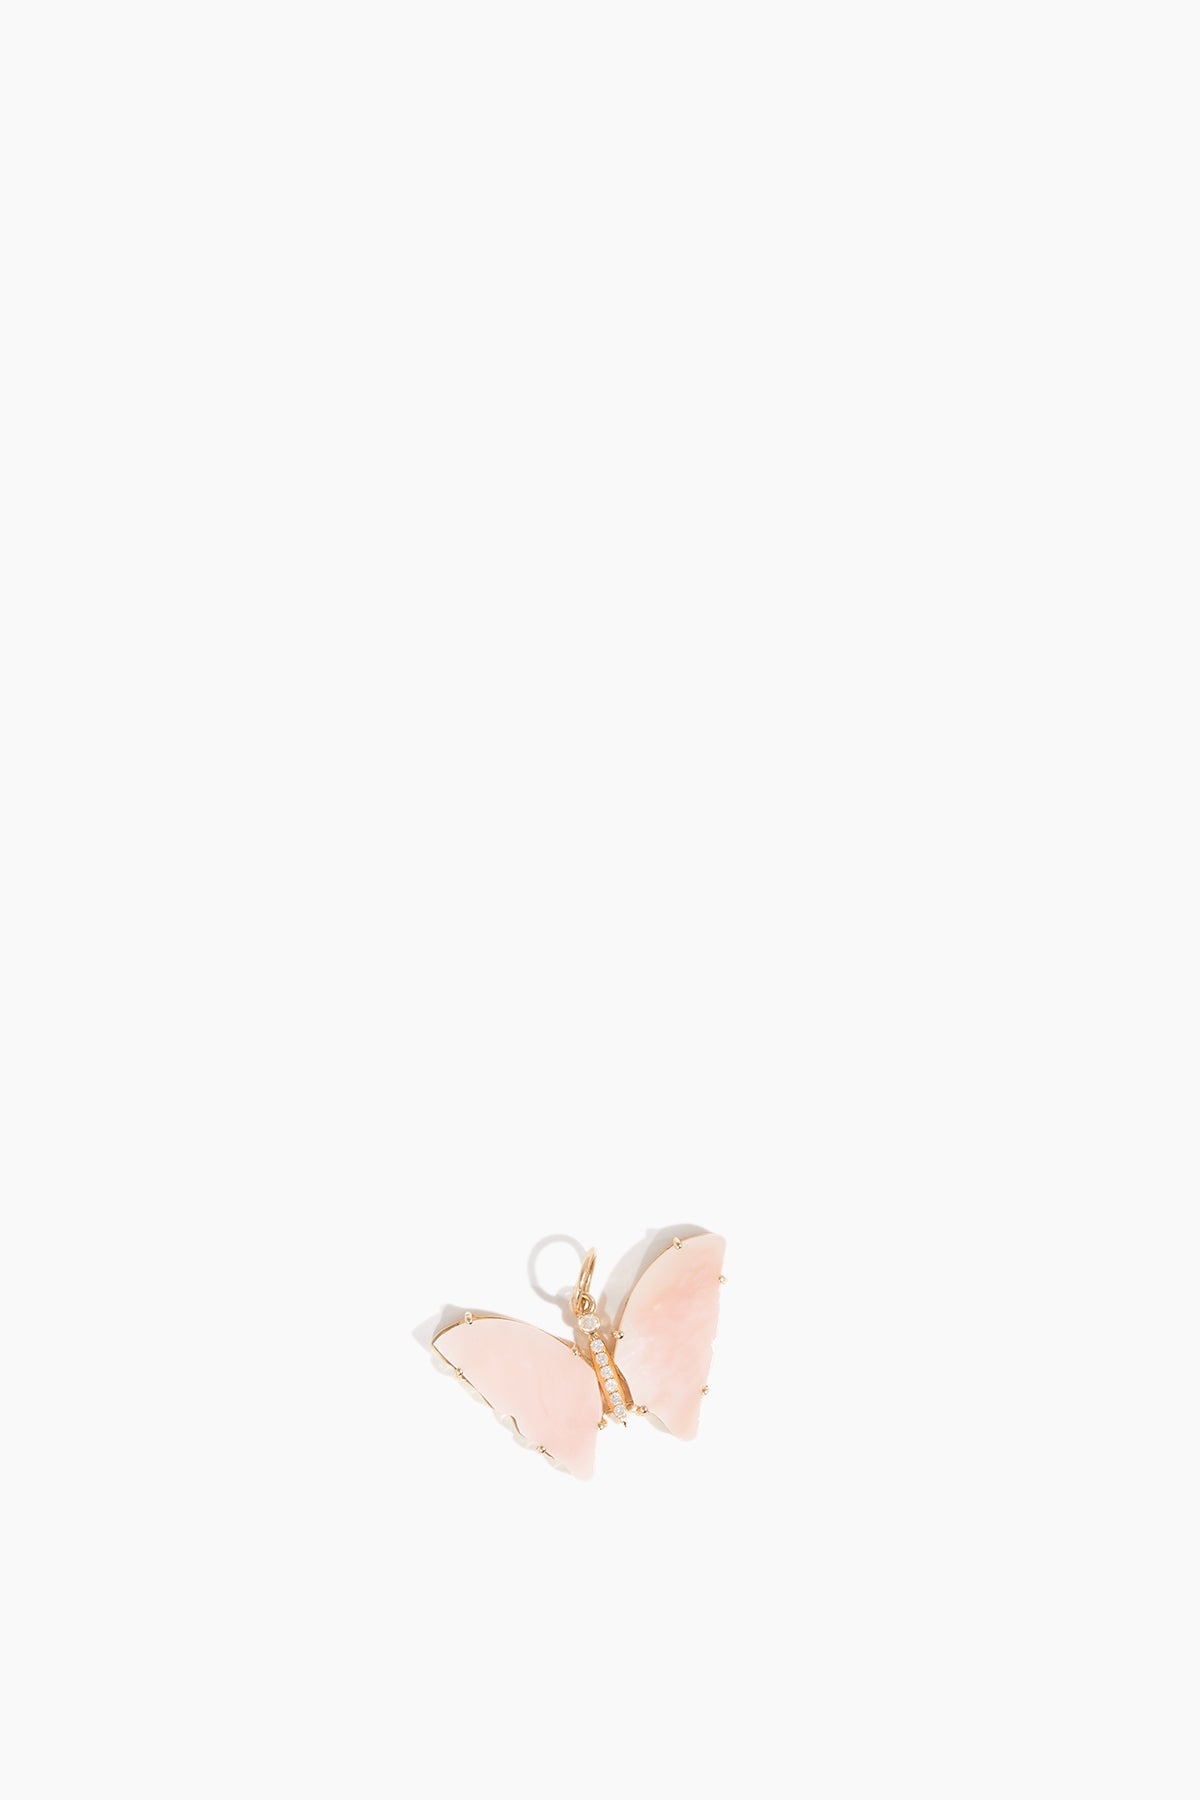 Vintage La Rose Unclassified Diamond Butterfly Pendant in 14K Pink Opal